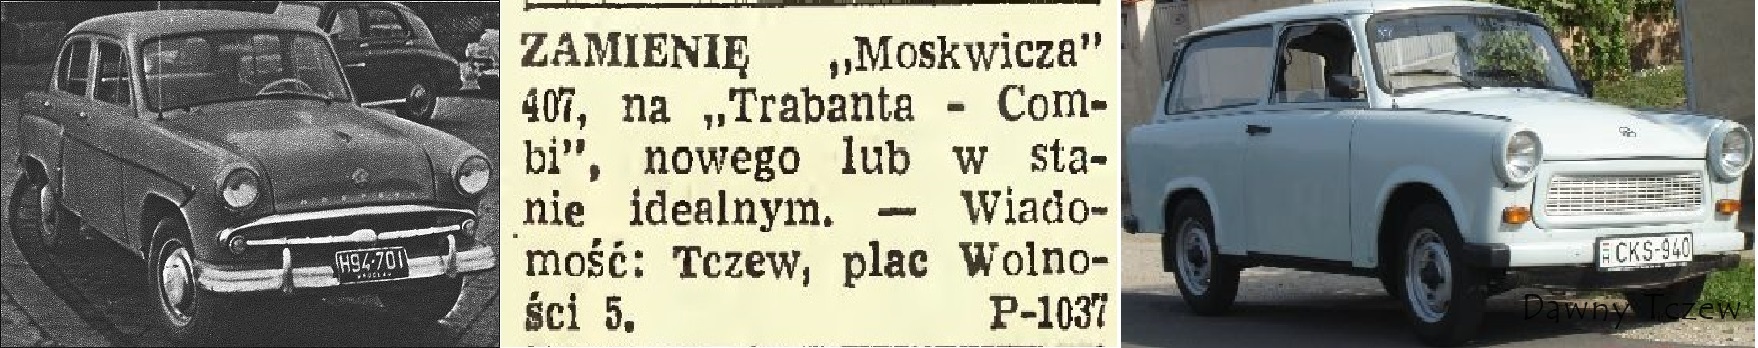 Dziennik Bałtycki, 12.11.1968 r..jpg